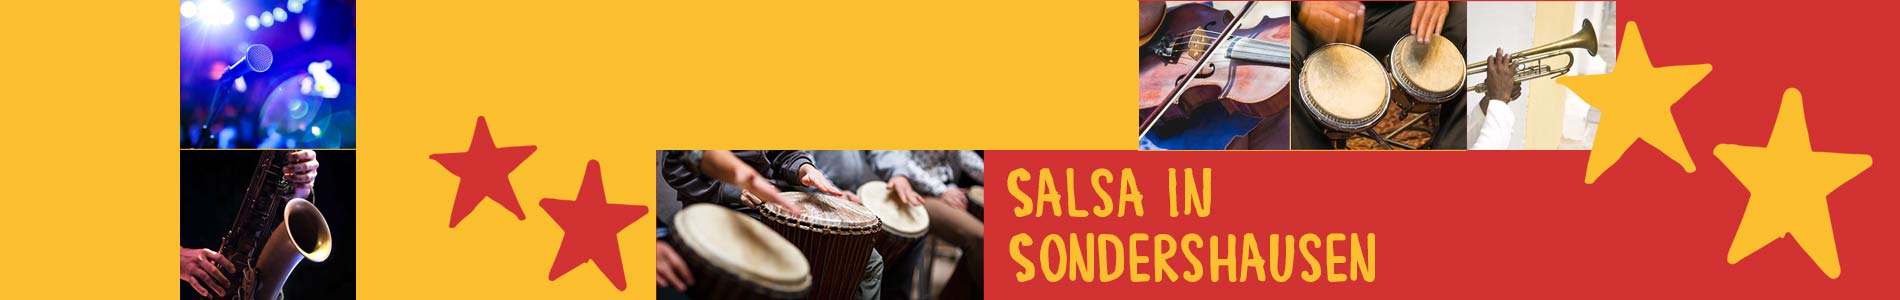 Salsa in Sondershausen – Salsa lernen und tanzen, Tanzkurse, Partys, Veranstaltungen